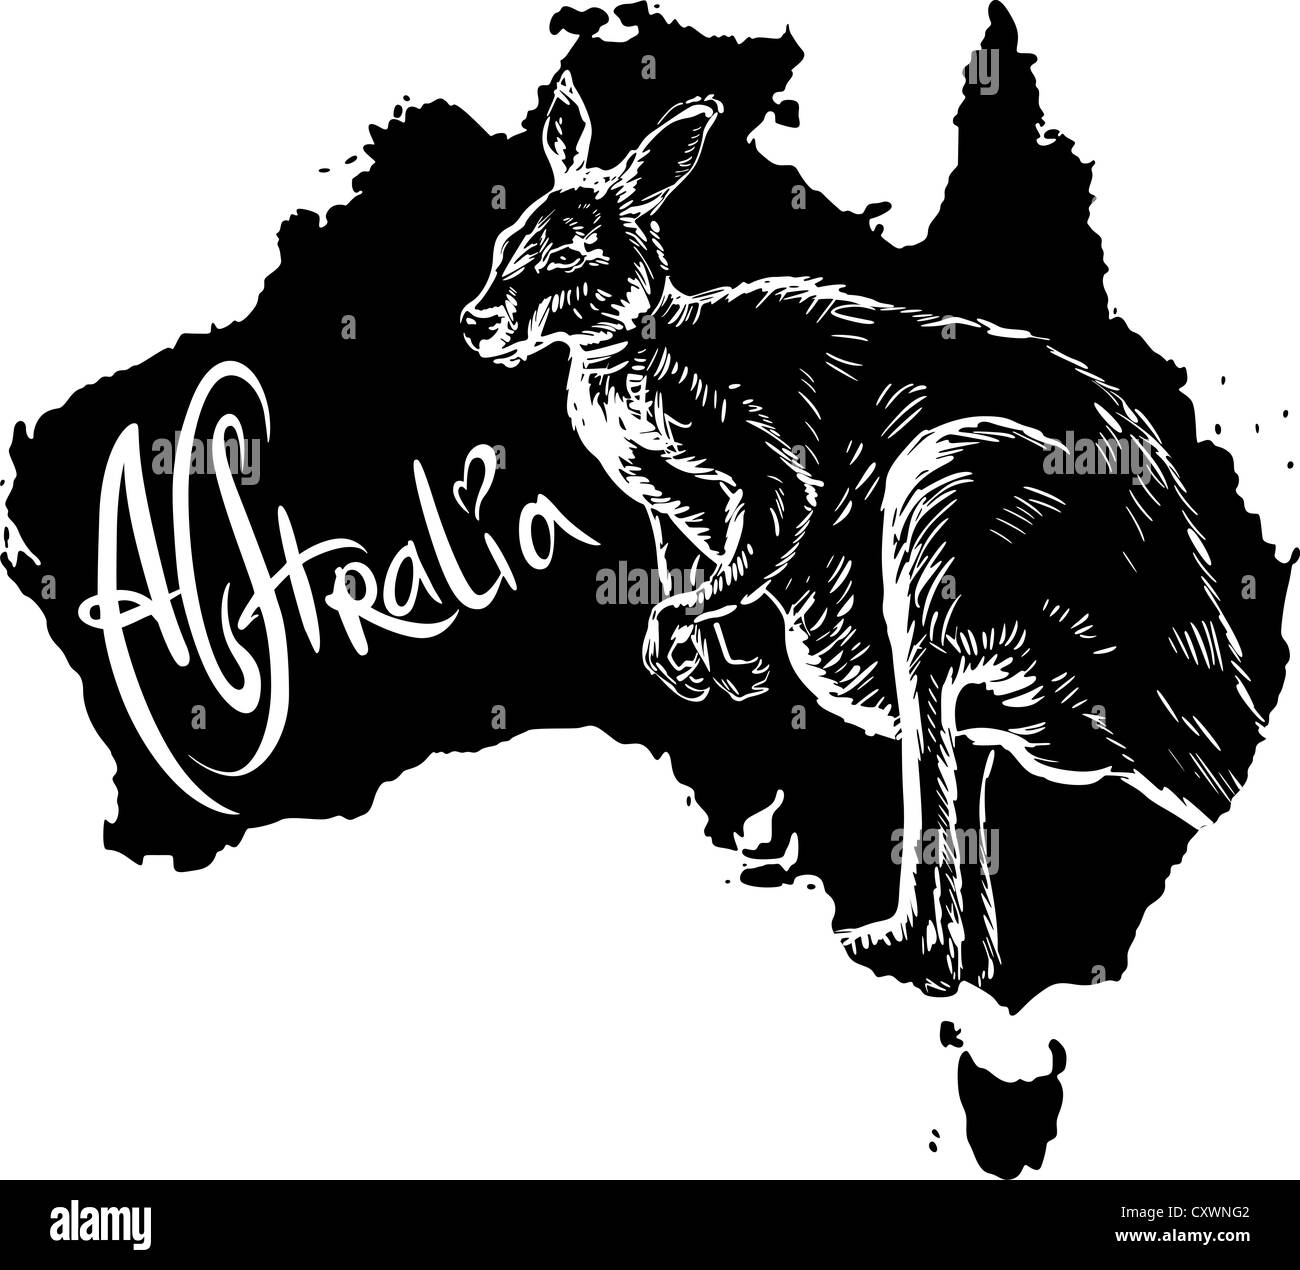 La carte kangourou d'Australie. Vector illustration noir et blanc. Banque D'Images